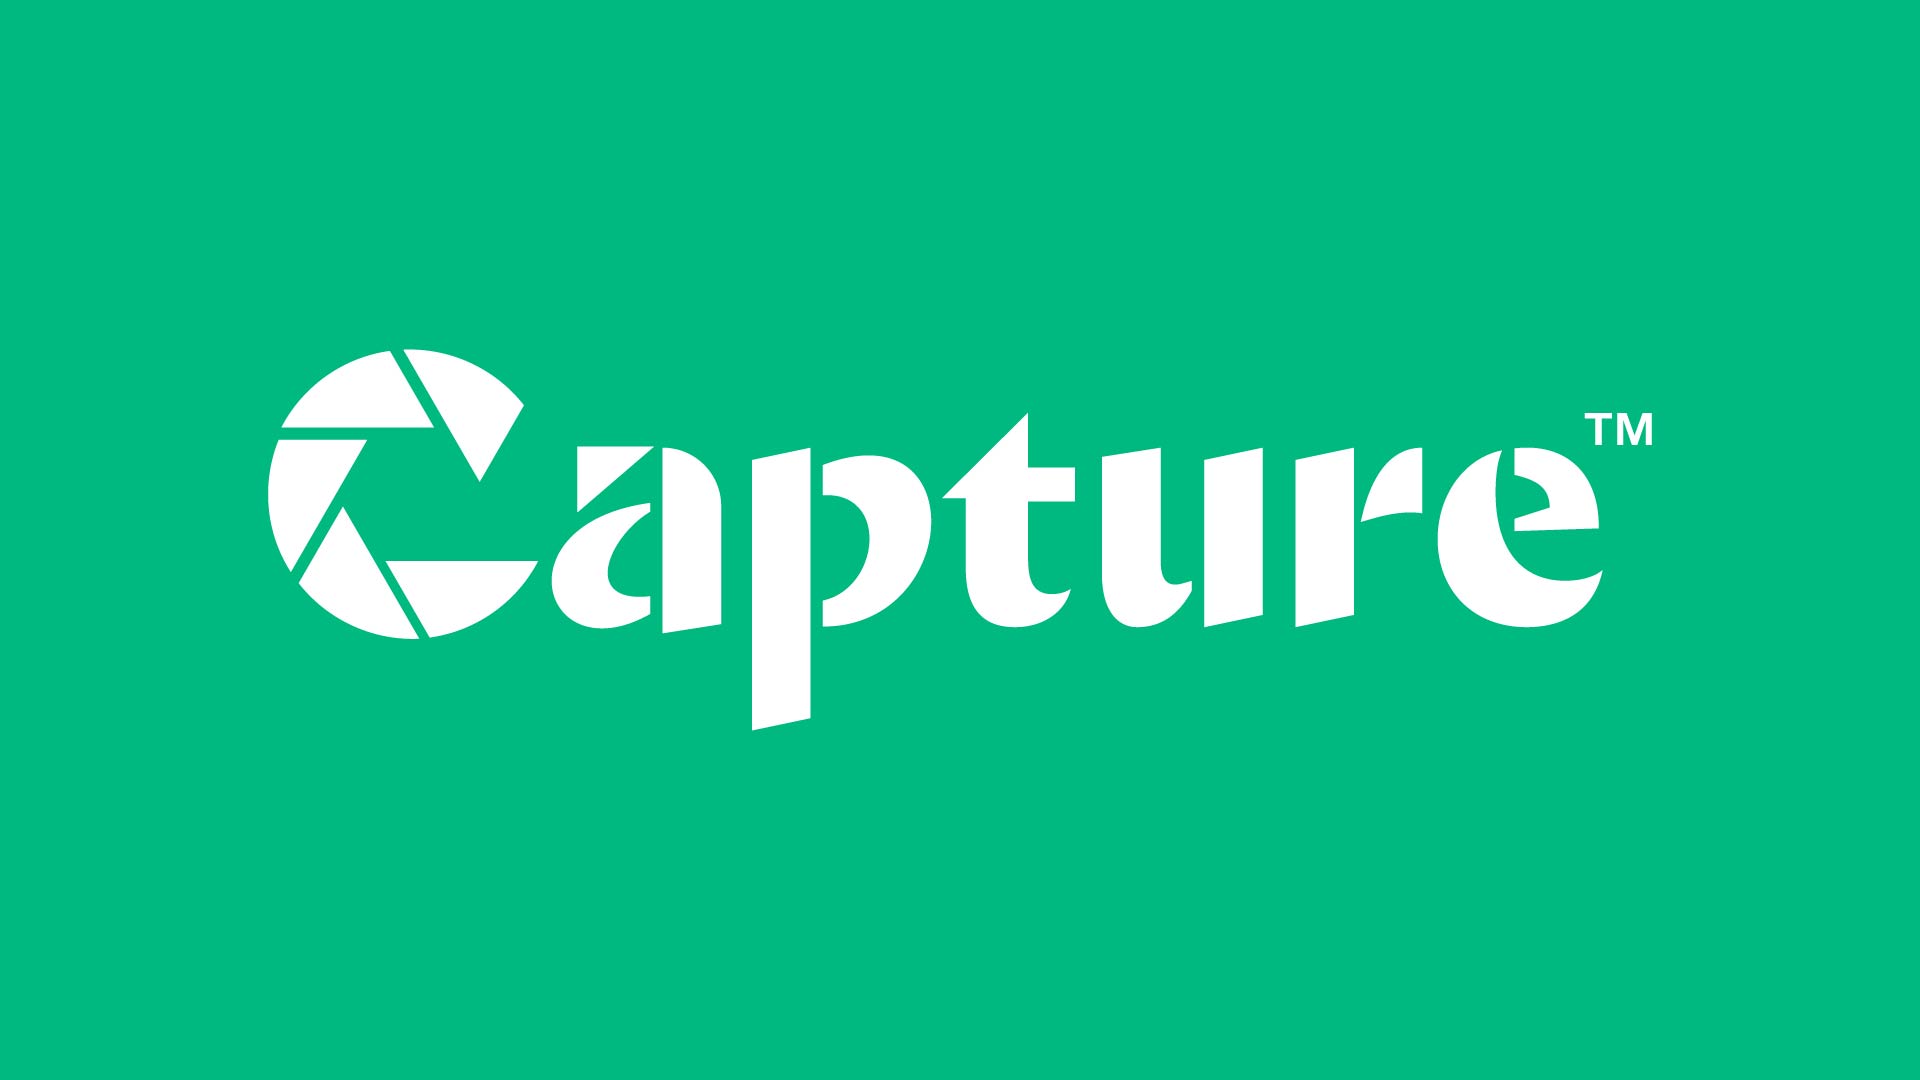 Capture logo designed by Kilter